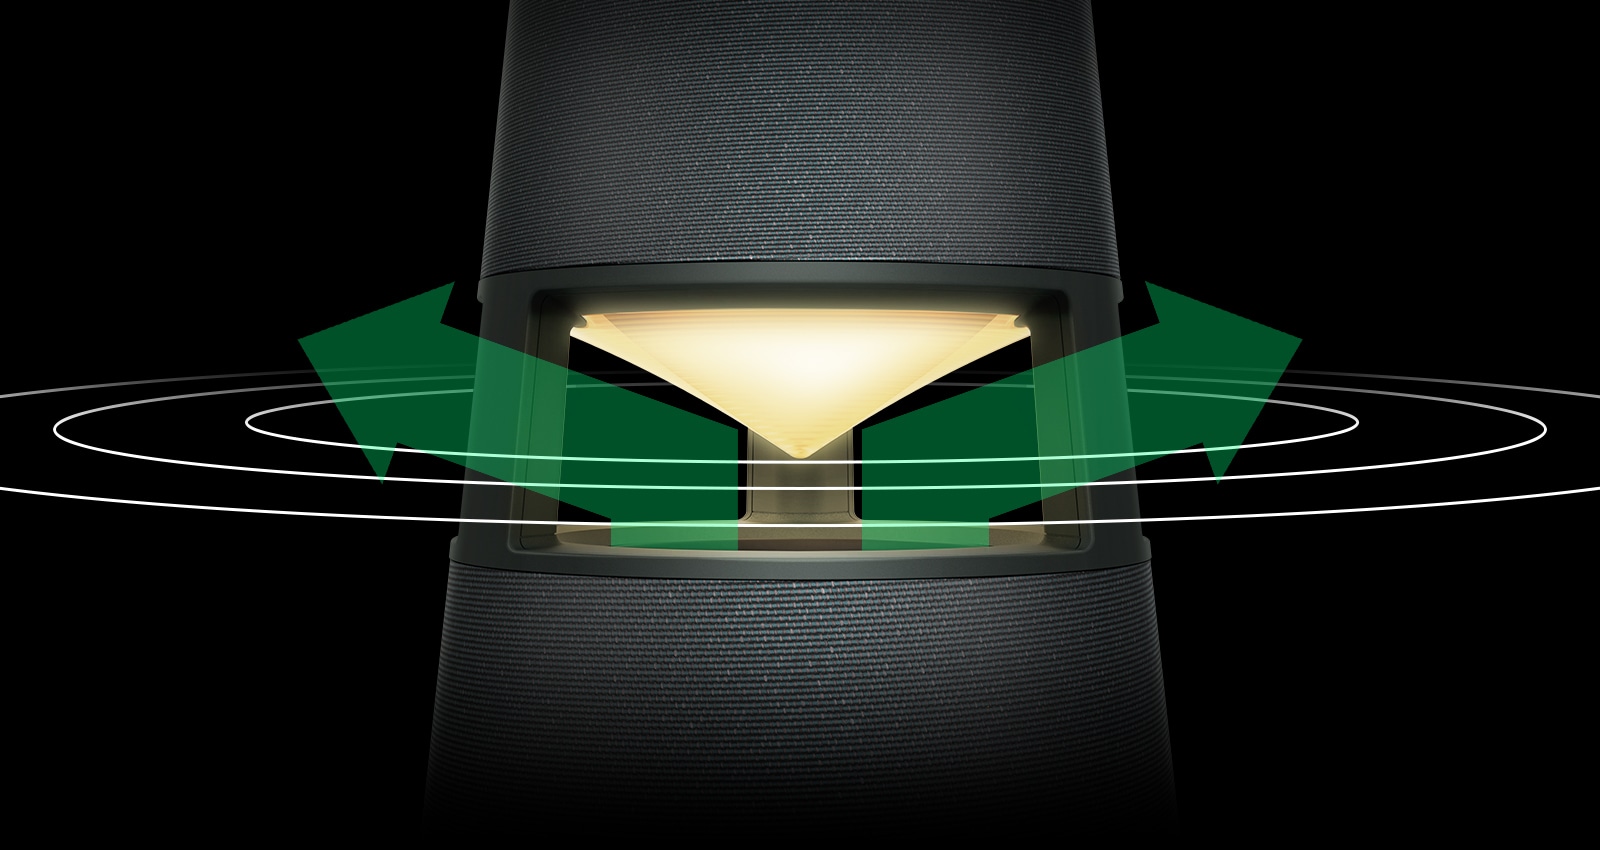 Изображение XBOOM 360 с желтой подсветкой с зелеными стрелками на левой и правой сторонах отражателя и звуковыми волнами, распространяющимися вокруг стрелки.